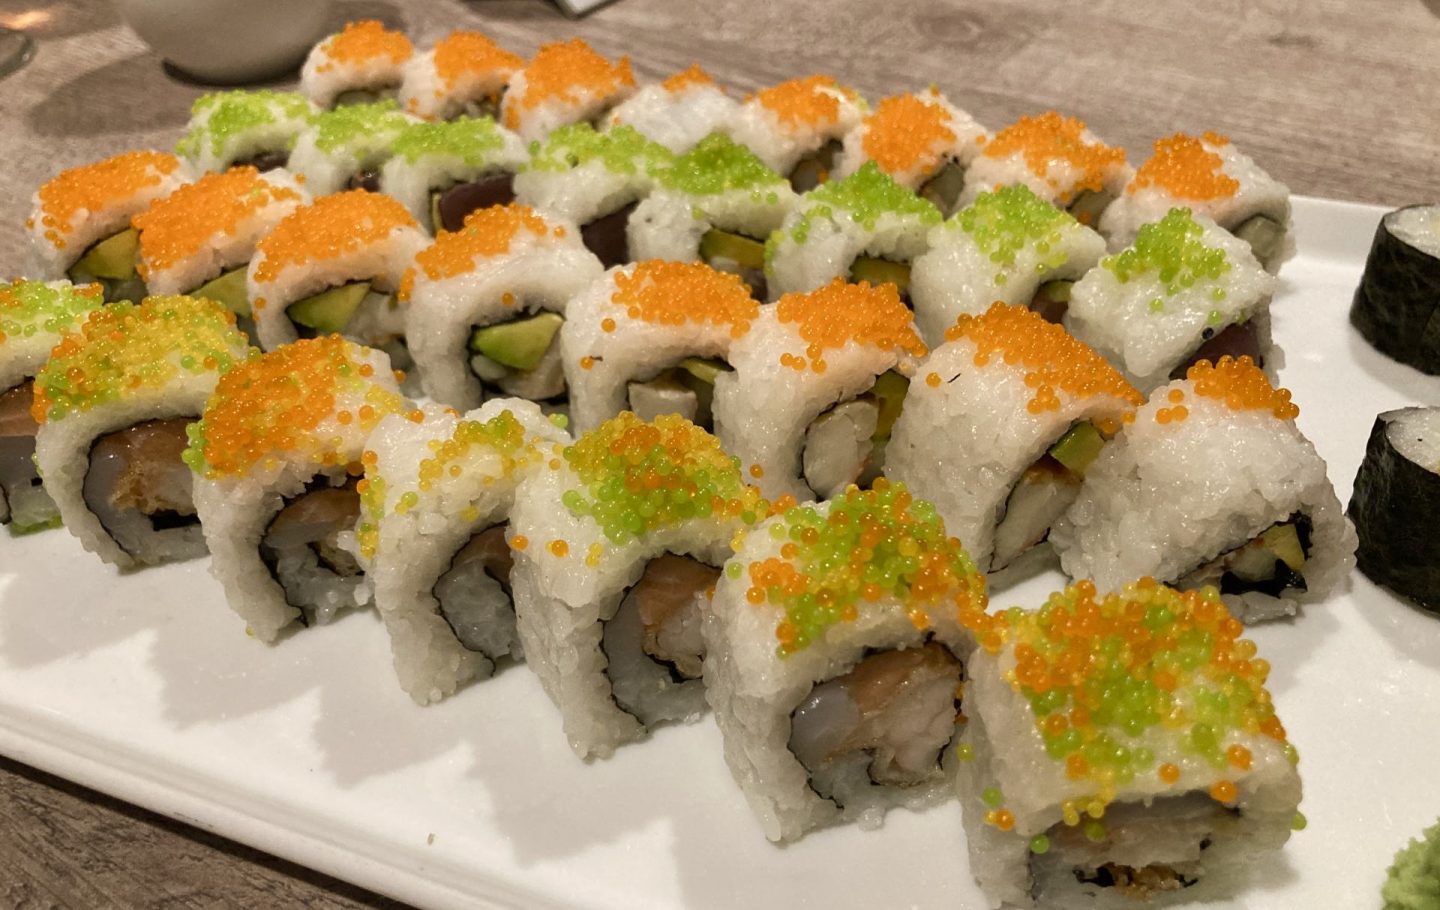 Erfahrung Bewertung Kritik Fischhaus Mein Schiff Sushi Foodblog Sternestulle